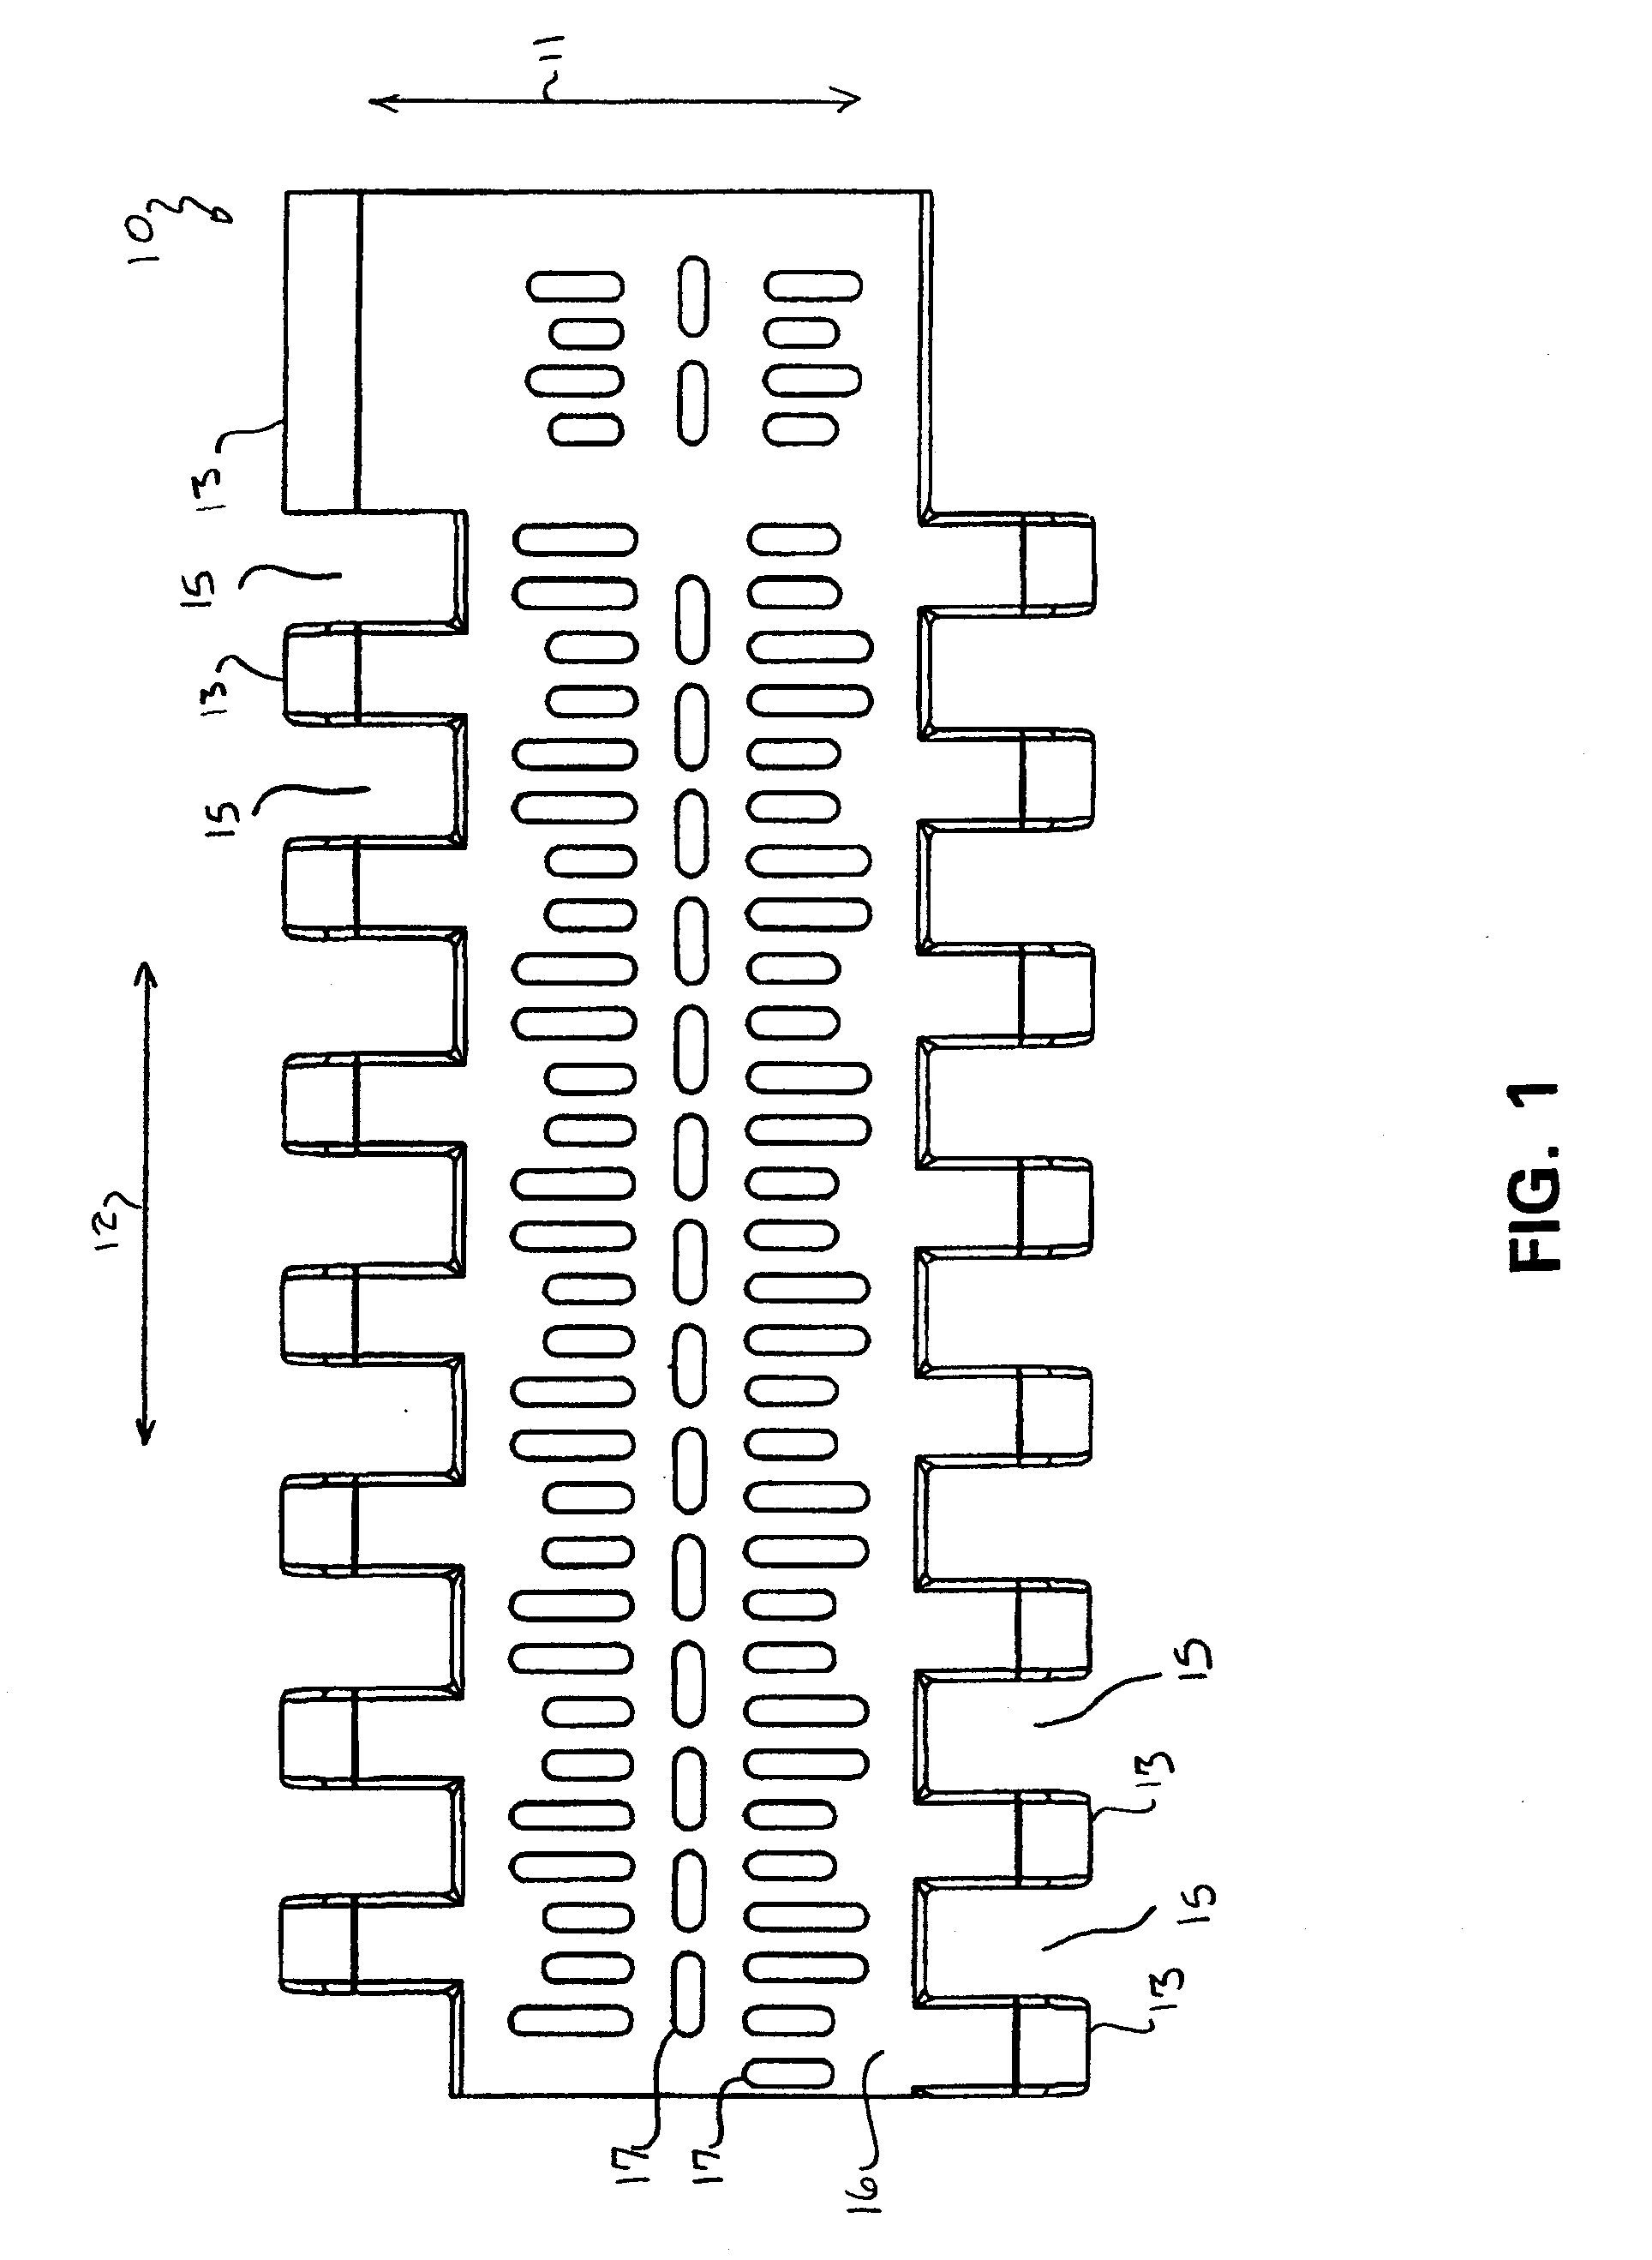 Module for a Modular Conveyor Belt